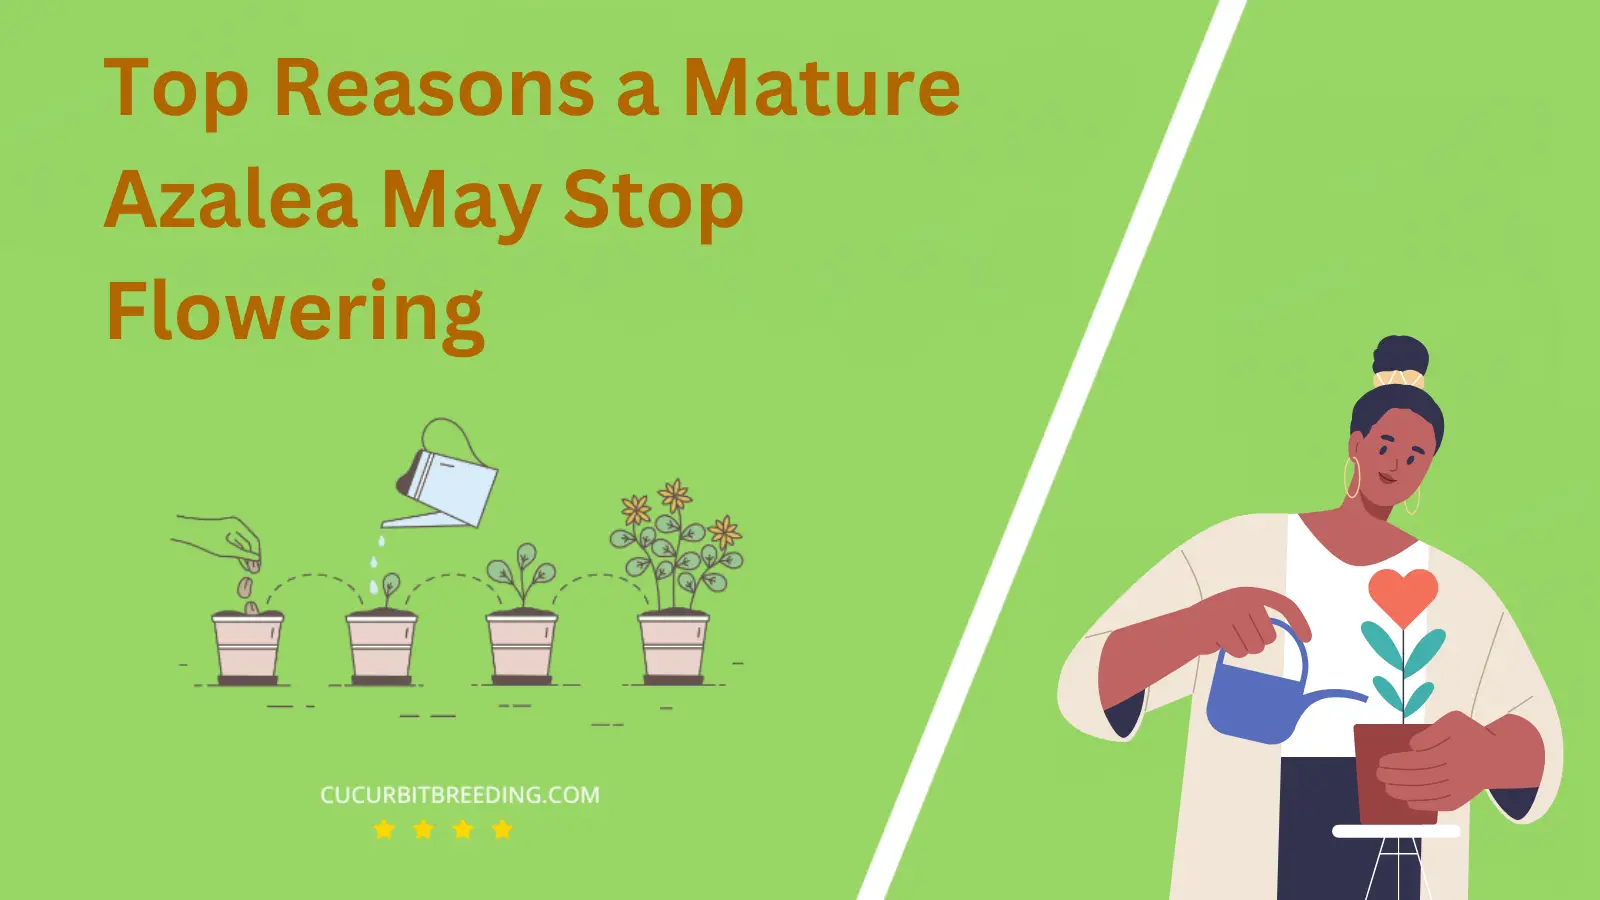 Top Reasons a Mature Azalea May Stop Flowering